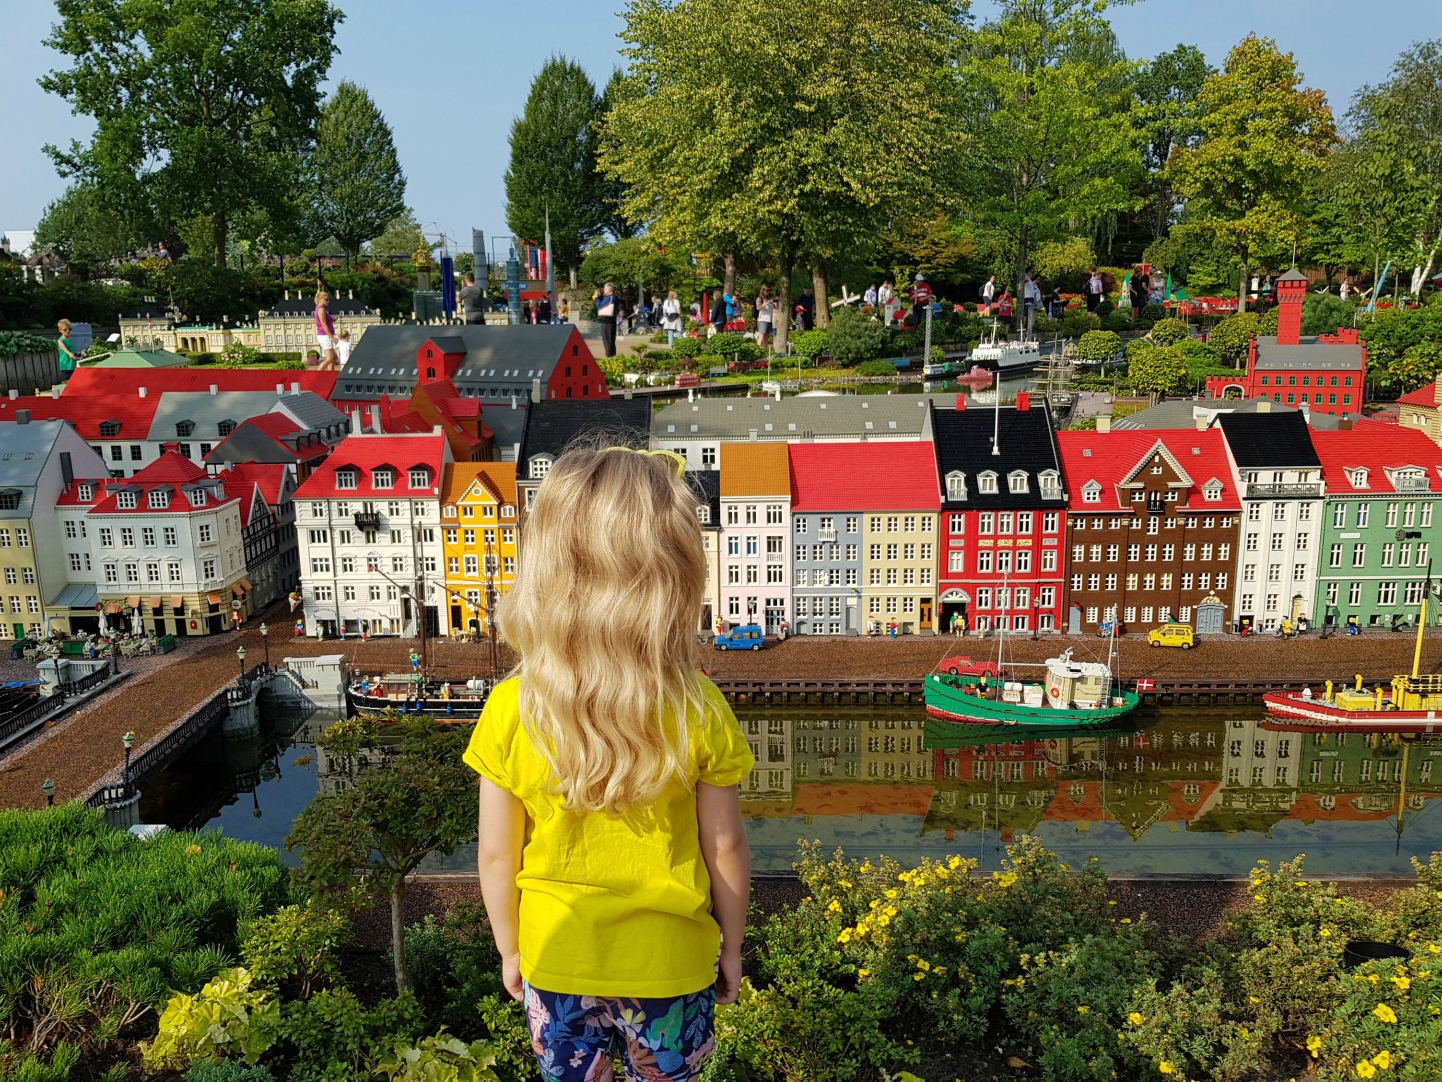 Theme parks around the world to explore from Dubai - Legoland, Denmark